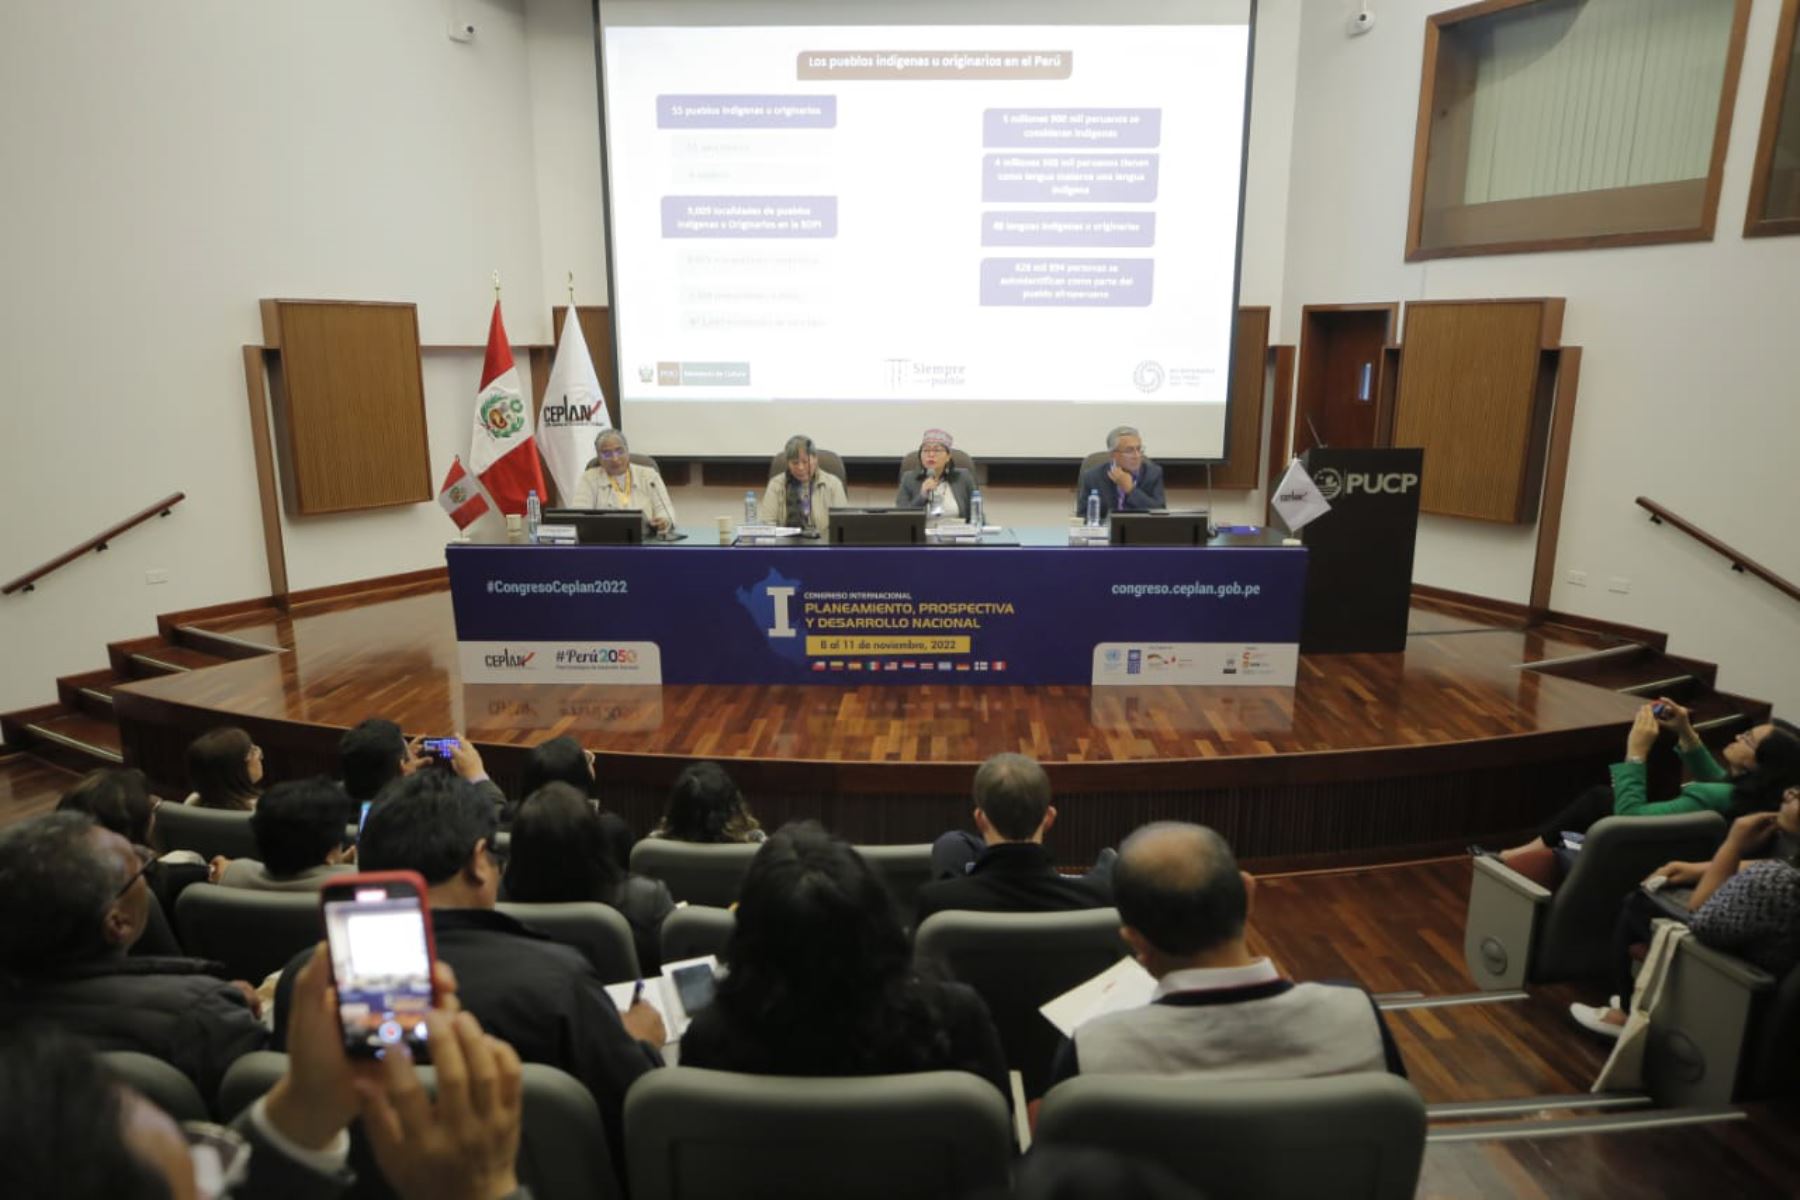 La viceministra de Interculturalidad, Rocilda Nunta, expuso en el “I Congreso Internacional de Planeamiento, Prospectiva y Desarrollo Nacional”.